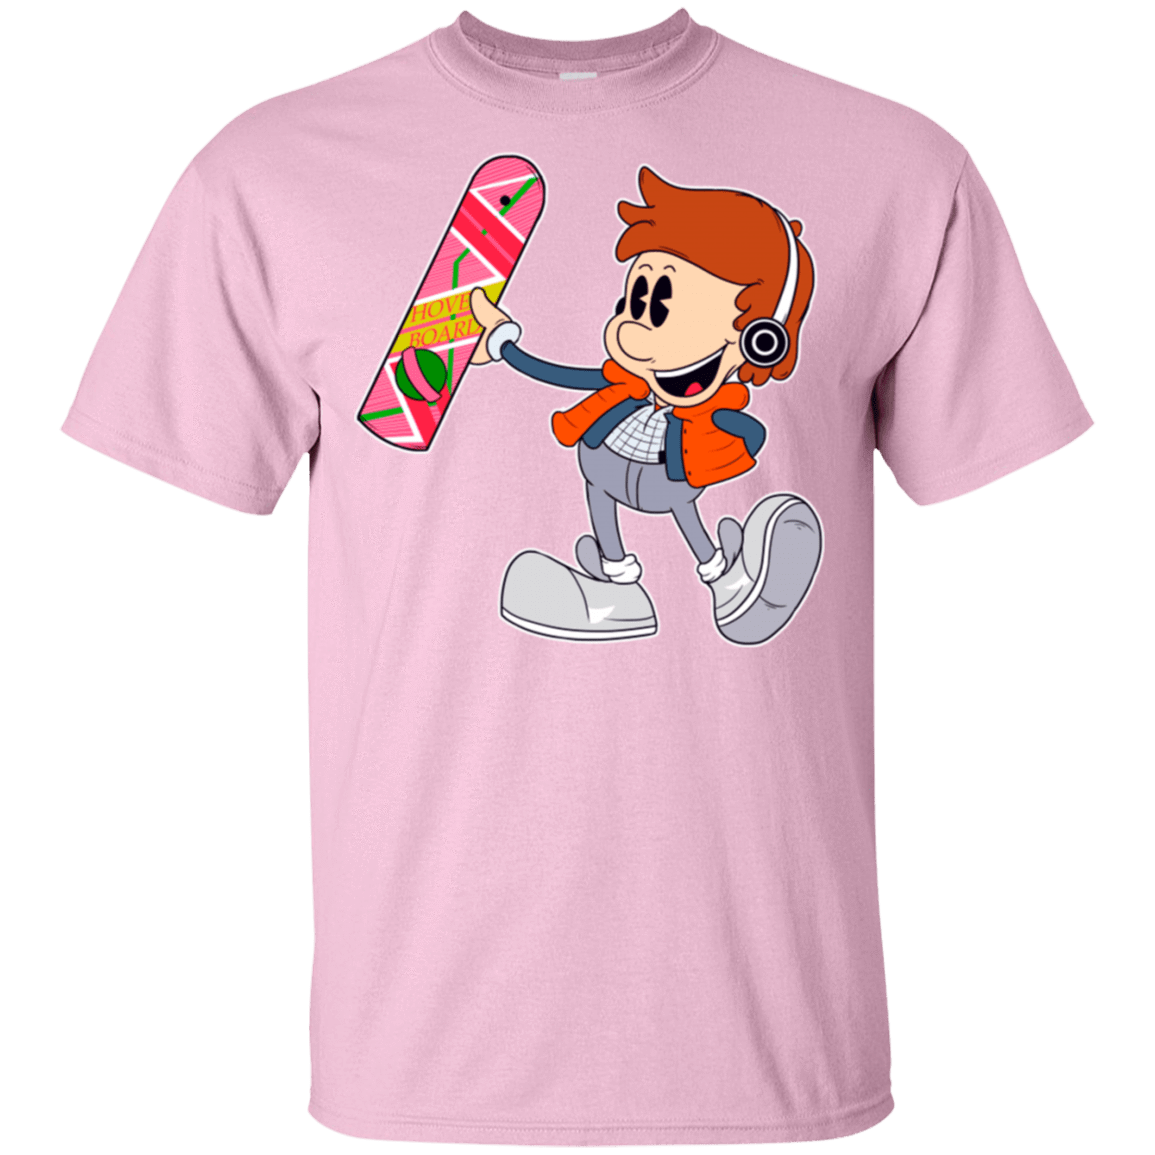 T-Shirts Light Pink / S Pop McFly T-Shirt